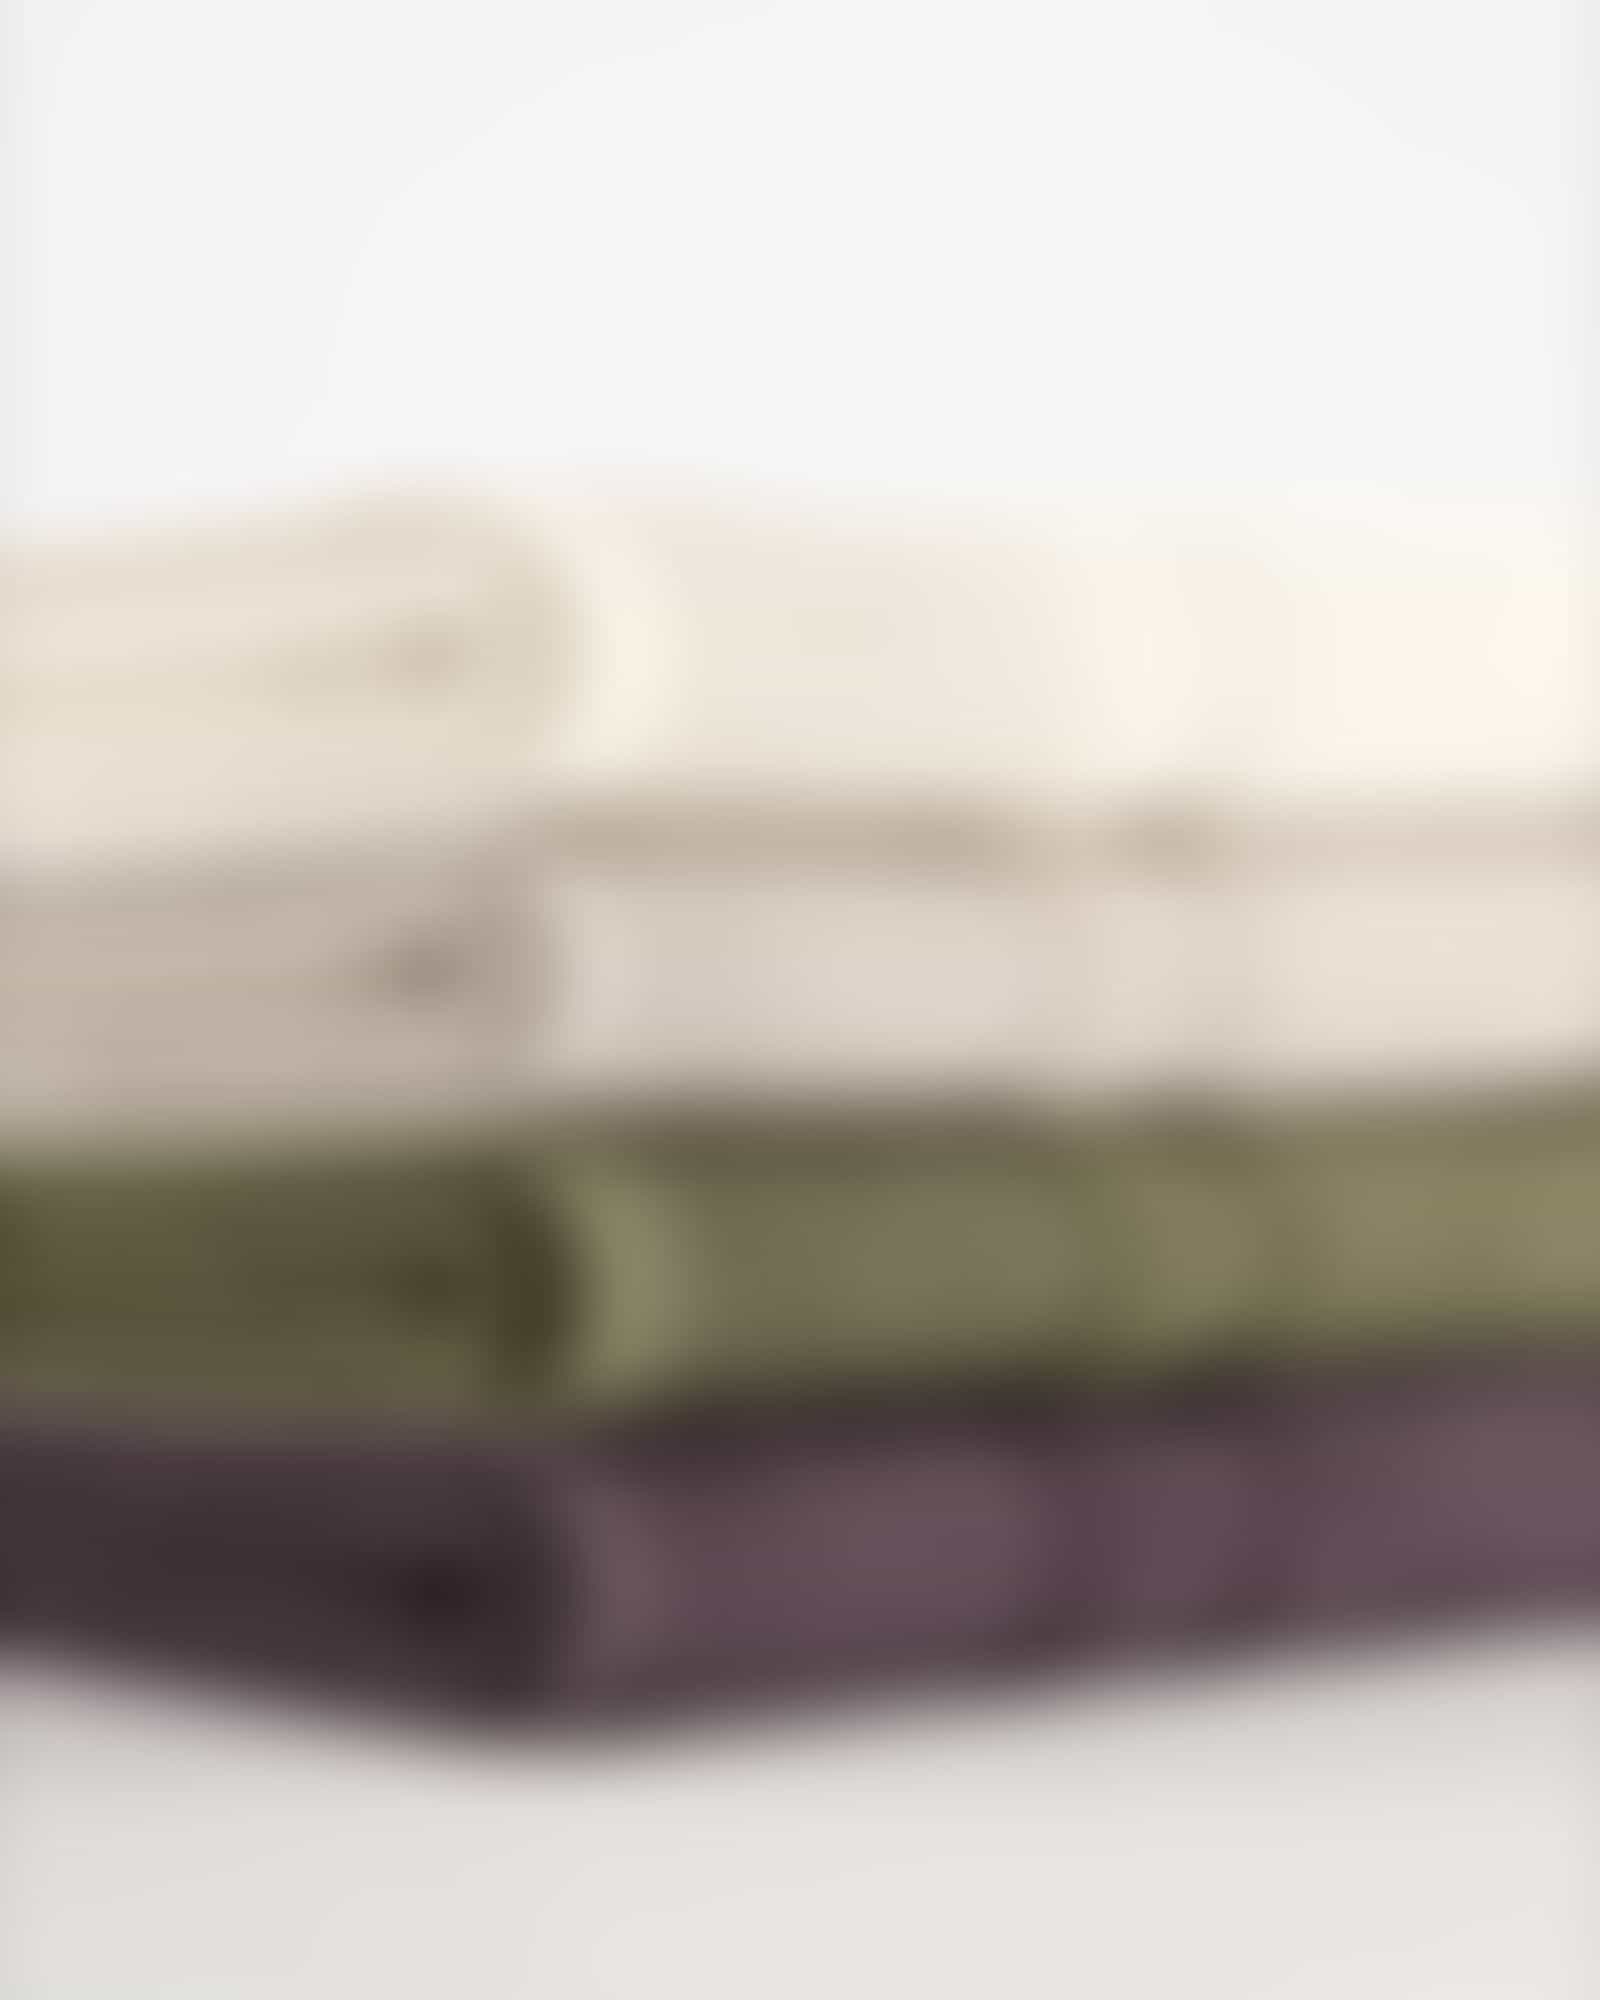 Möve Handtücher Wellbeing Perlstruktur - Farbe: graphite - 843 - Duschtuch 67x140 cm